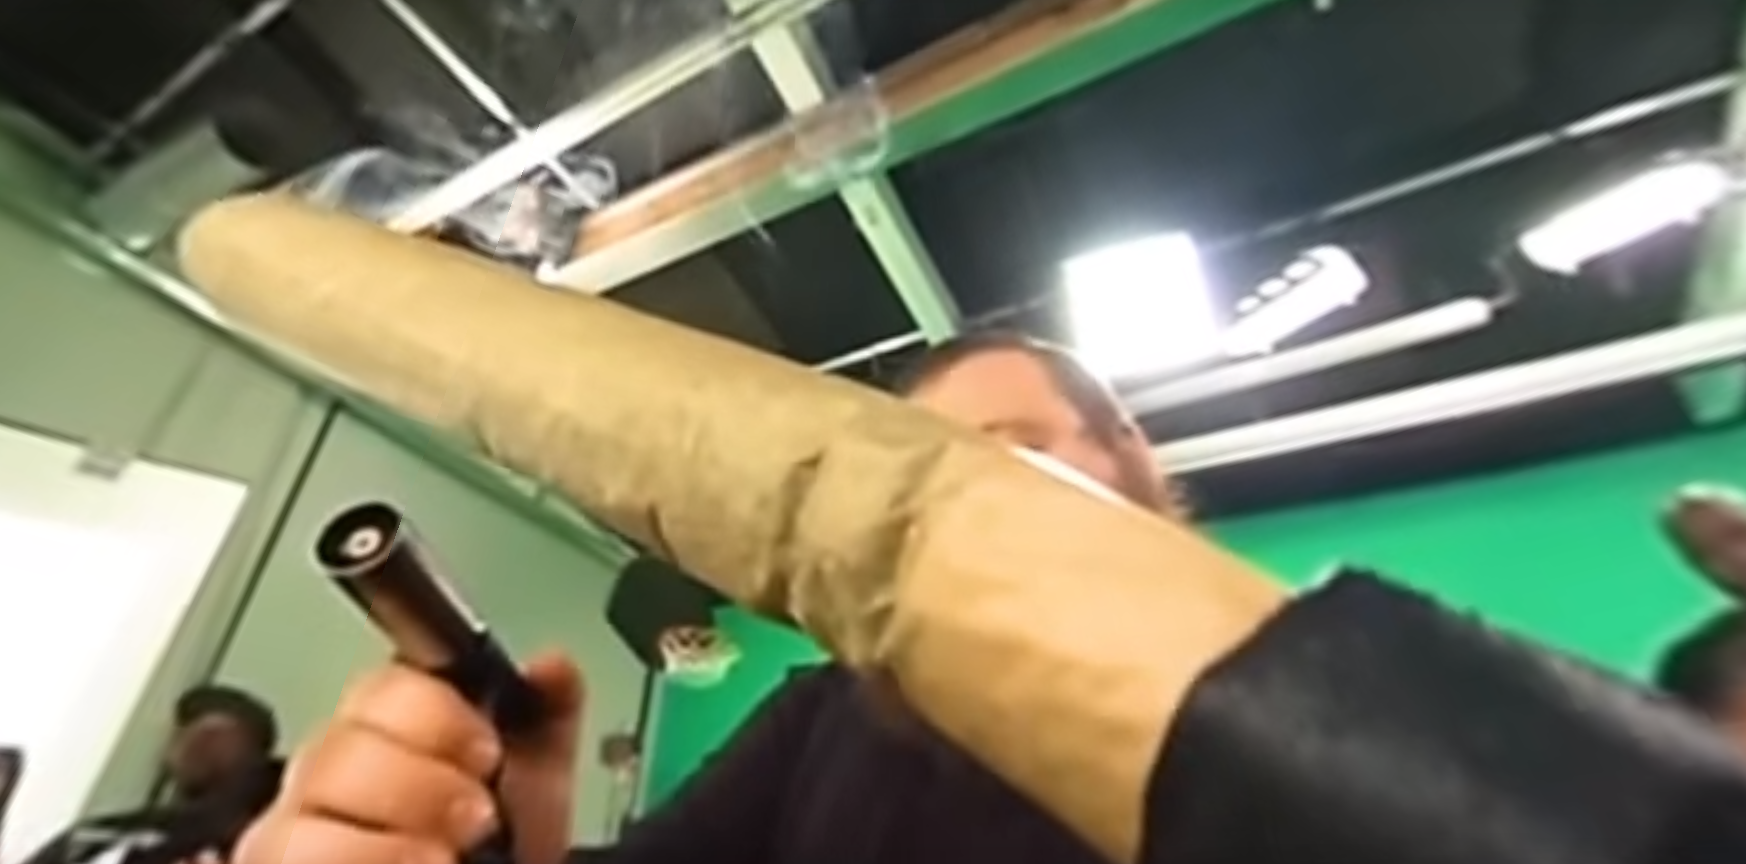 Ha kíváncsi vagy, milyen Action Bronson óriási spanglijának lenni, akkor ez a videó neked készült